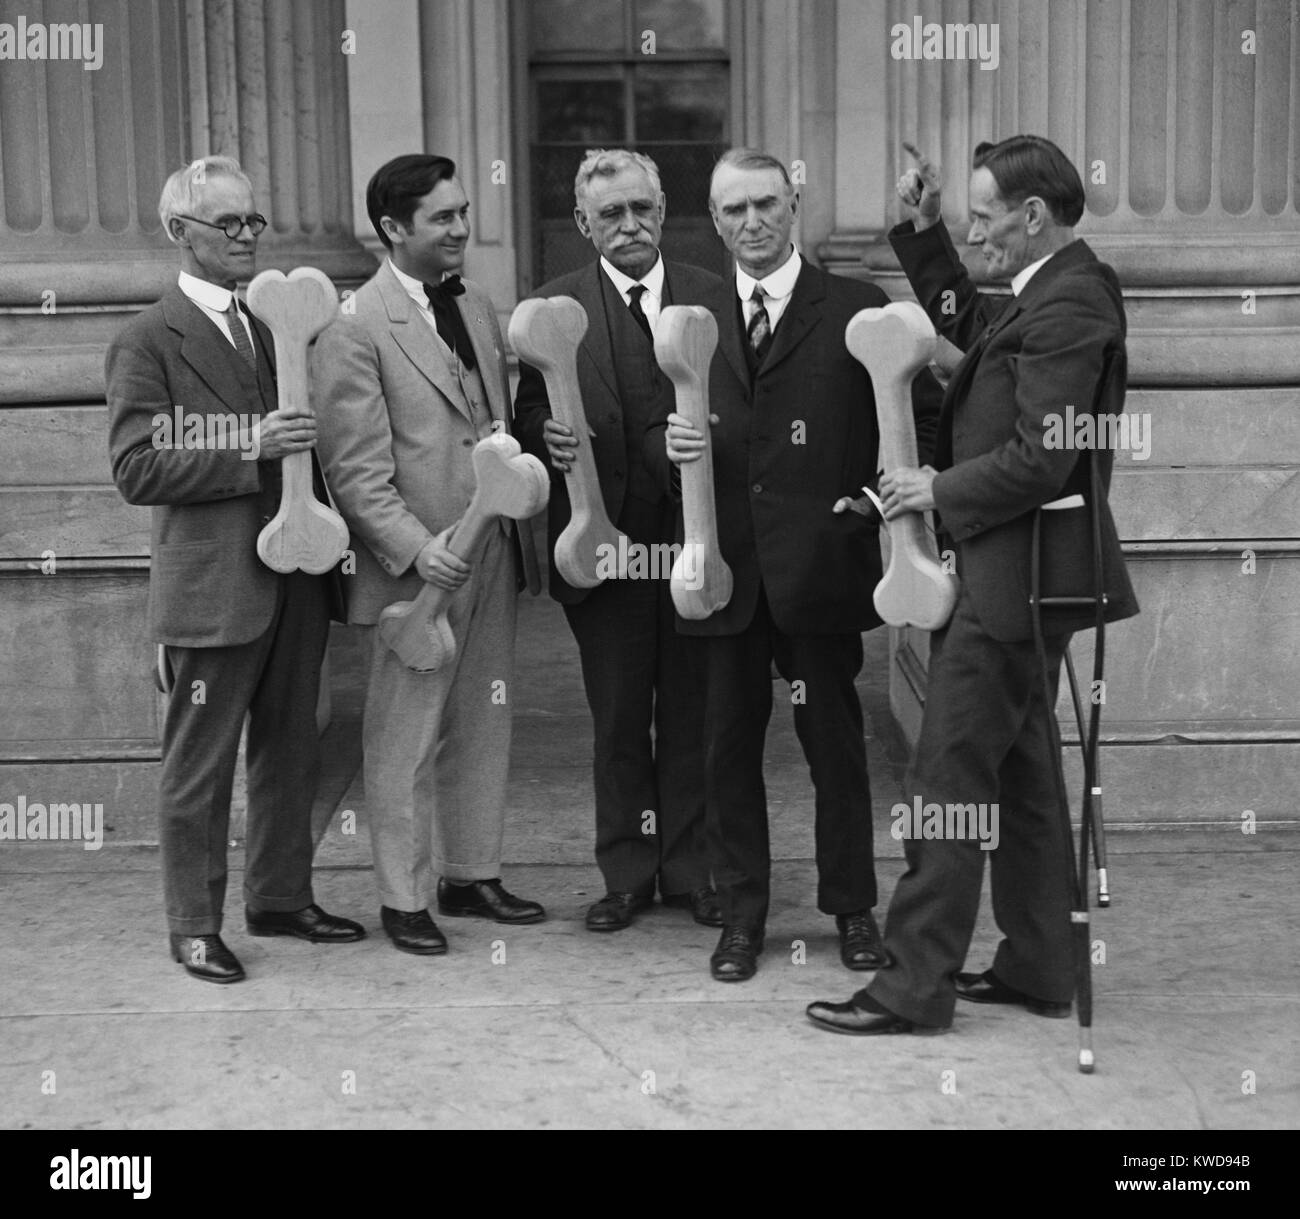 M. William Upshaw, rejoint par d'autres 'archi-sèche' hommes tenant à props d'os le Capitole. Upshaw, le "ryest des Drys', est présenté à la présidence pour l'interdiction de travail en 1932 (BSLOC 2016 8 66) Banque D'Images